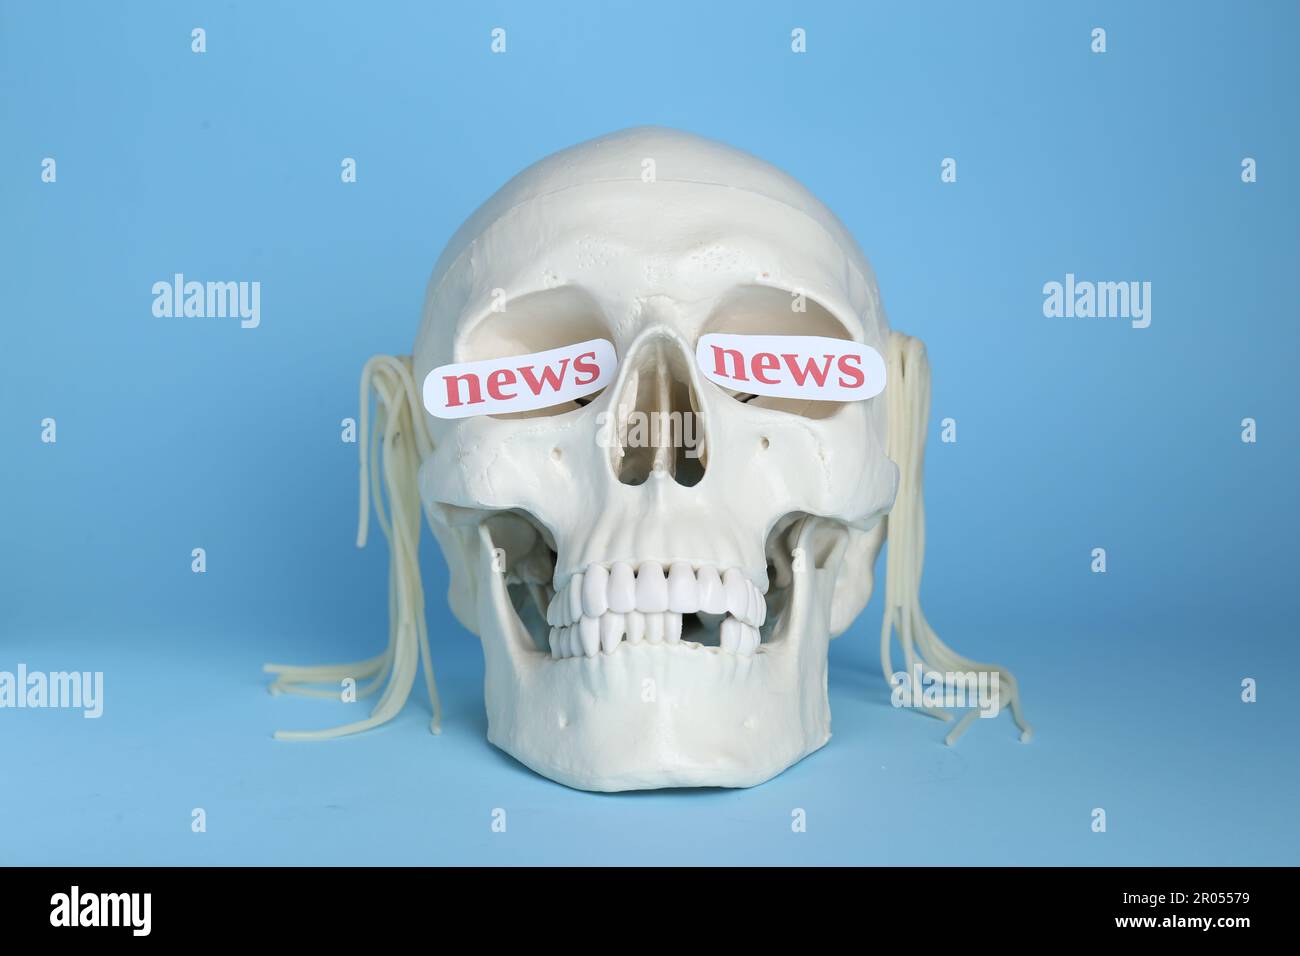 Konzept der Informations- und Medienkriegsführung. Menschlicher Schädel mit Nudeln und Wörtern Nachrichten in Augenhöhlen auf hellblauem Hintergrund Stockfoto